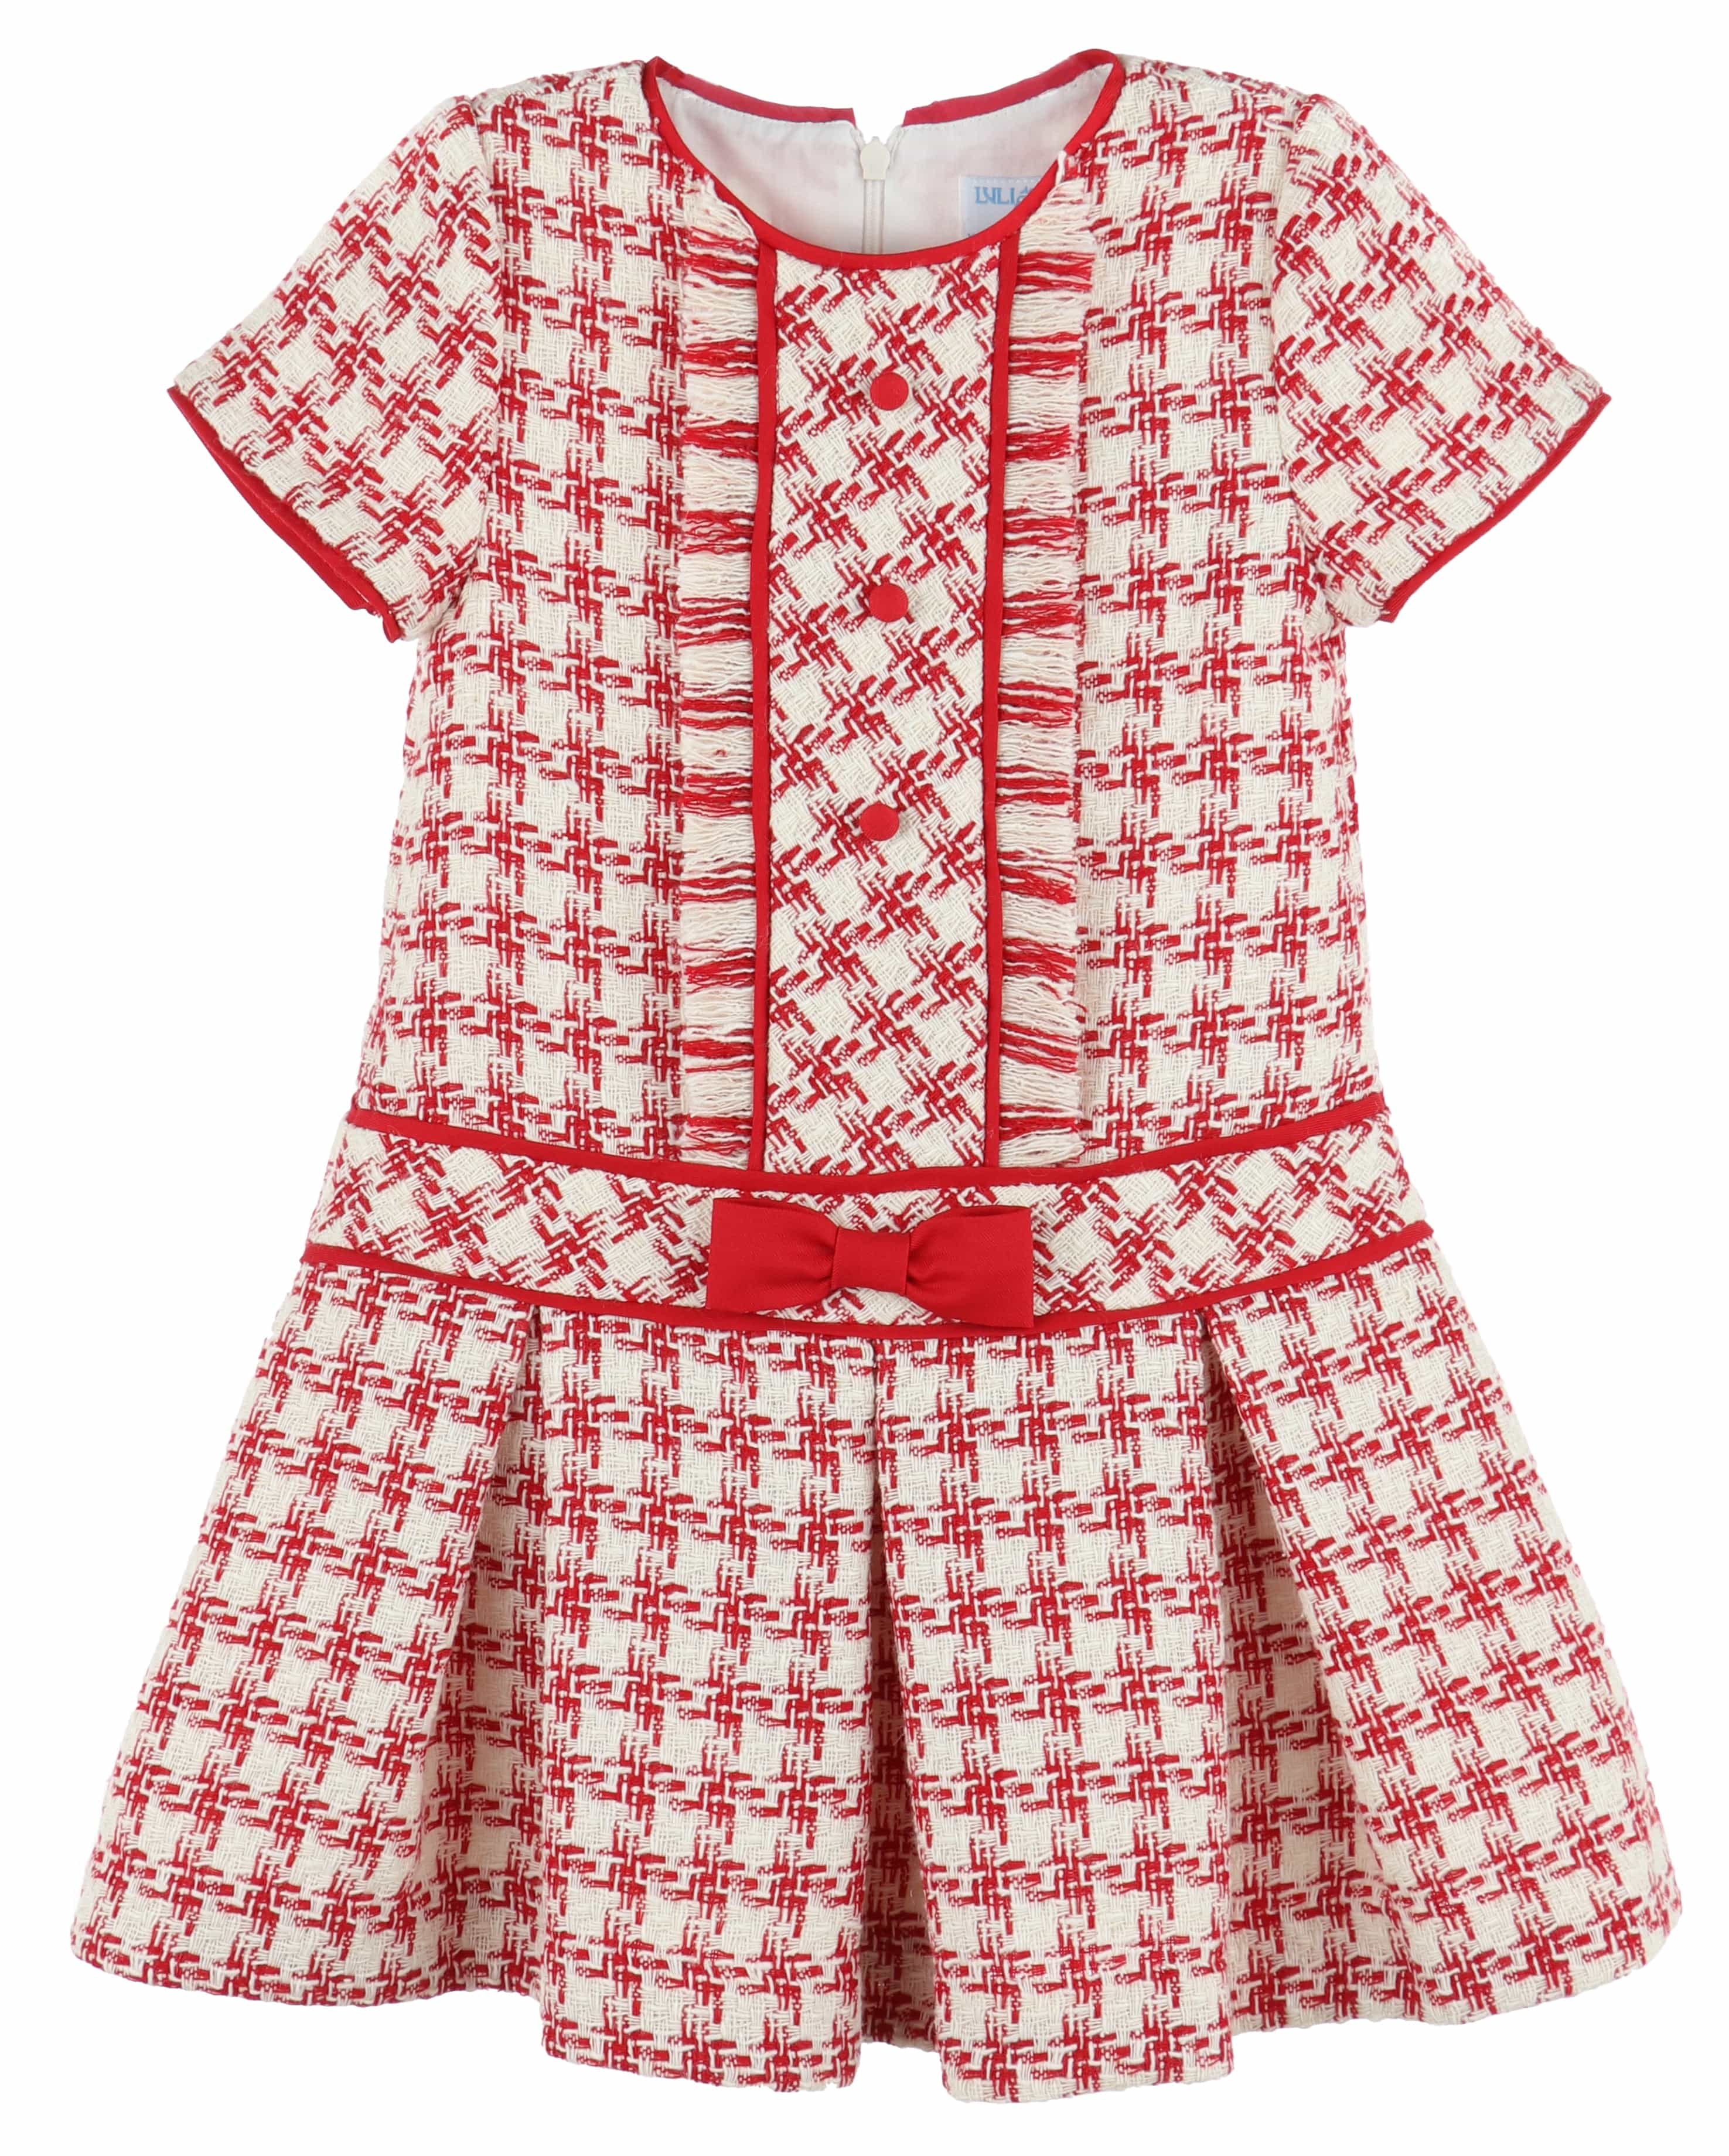 C&A - Casero & Associates Casero & Associates Tweed Drop Waist Dress - Little Miss Muffin Children & Home